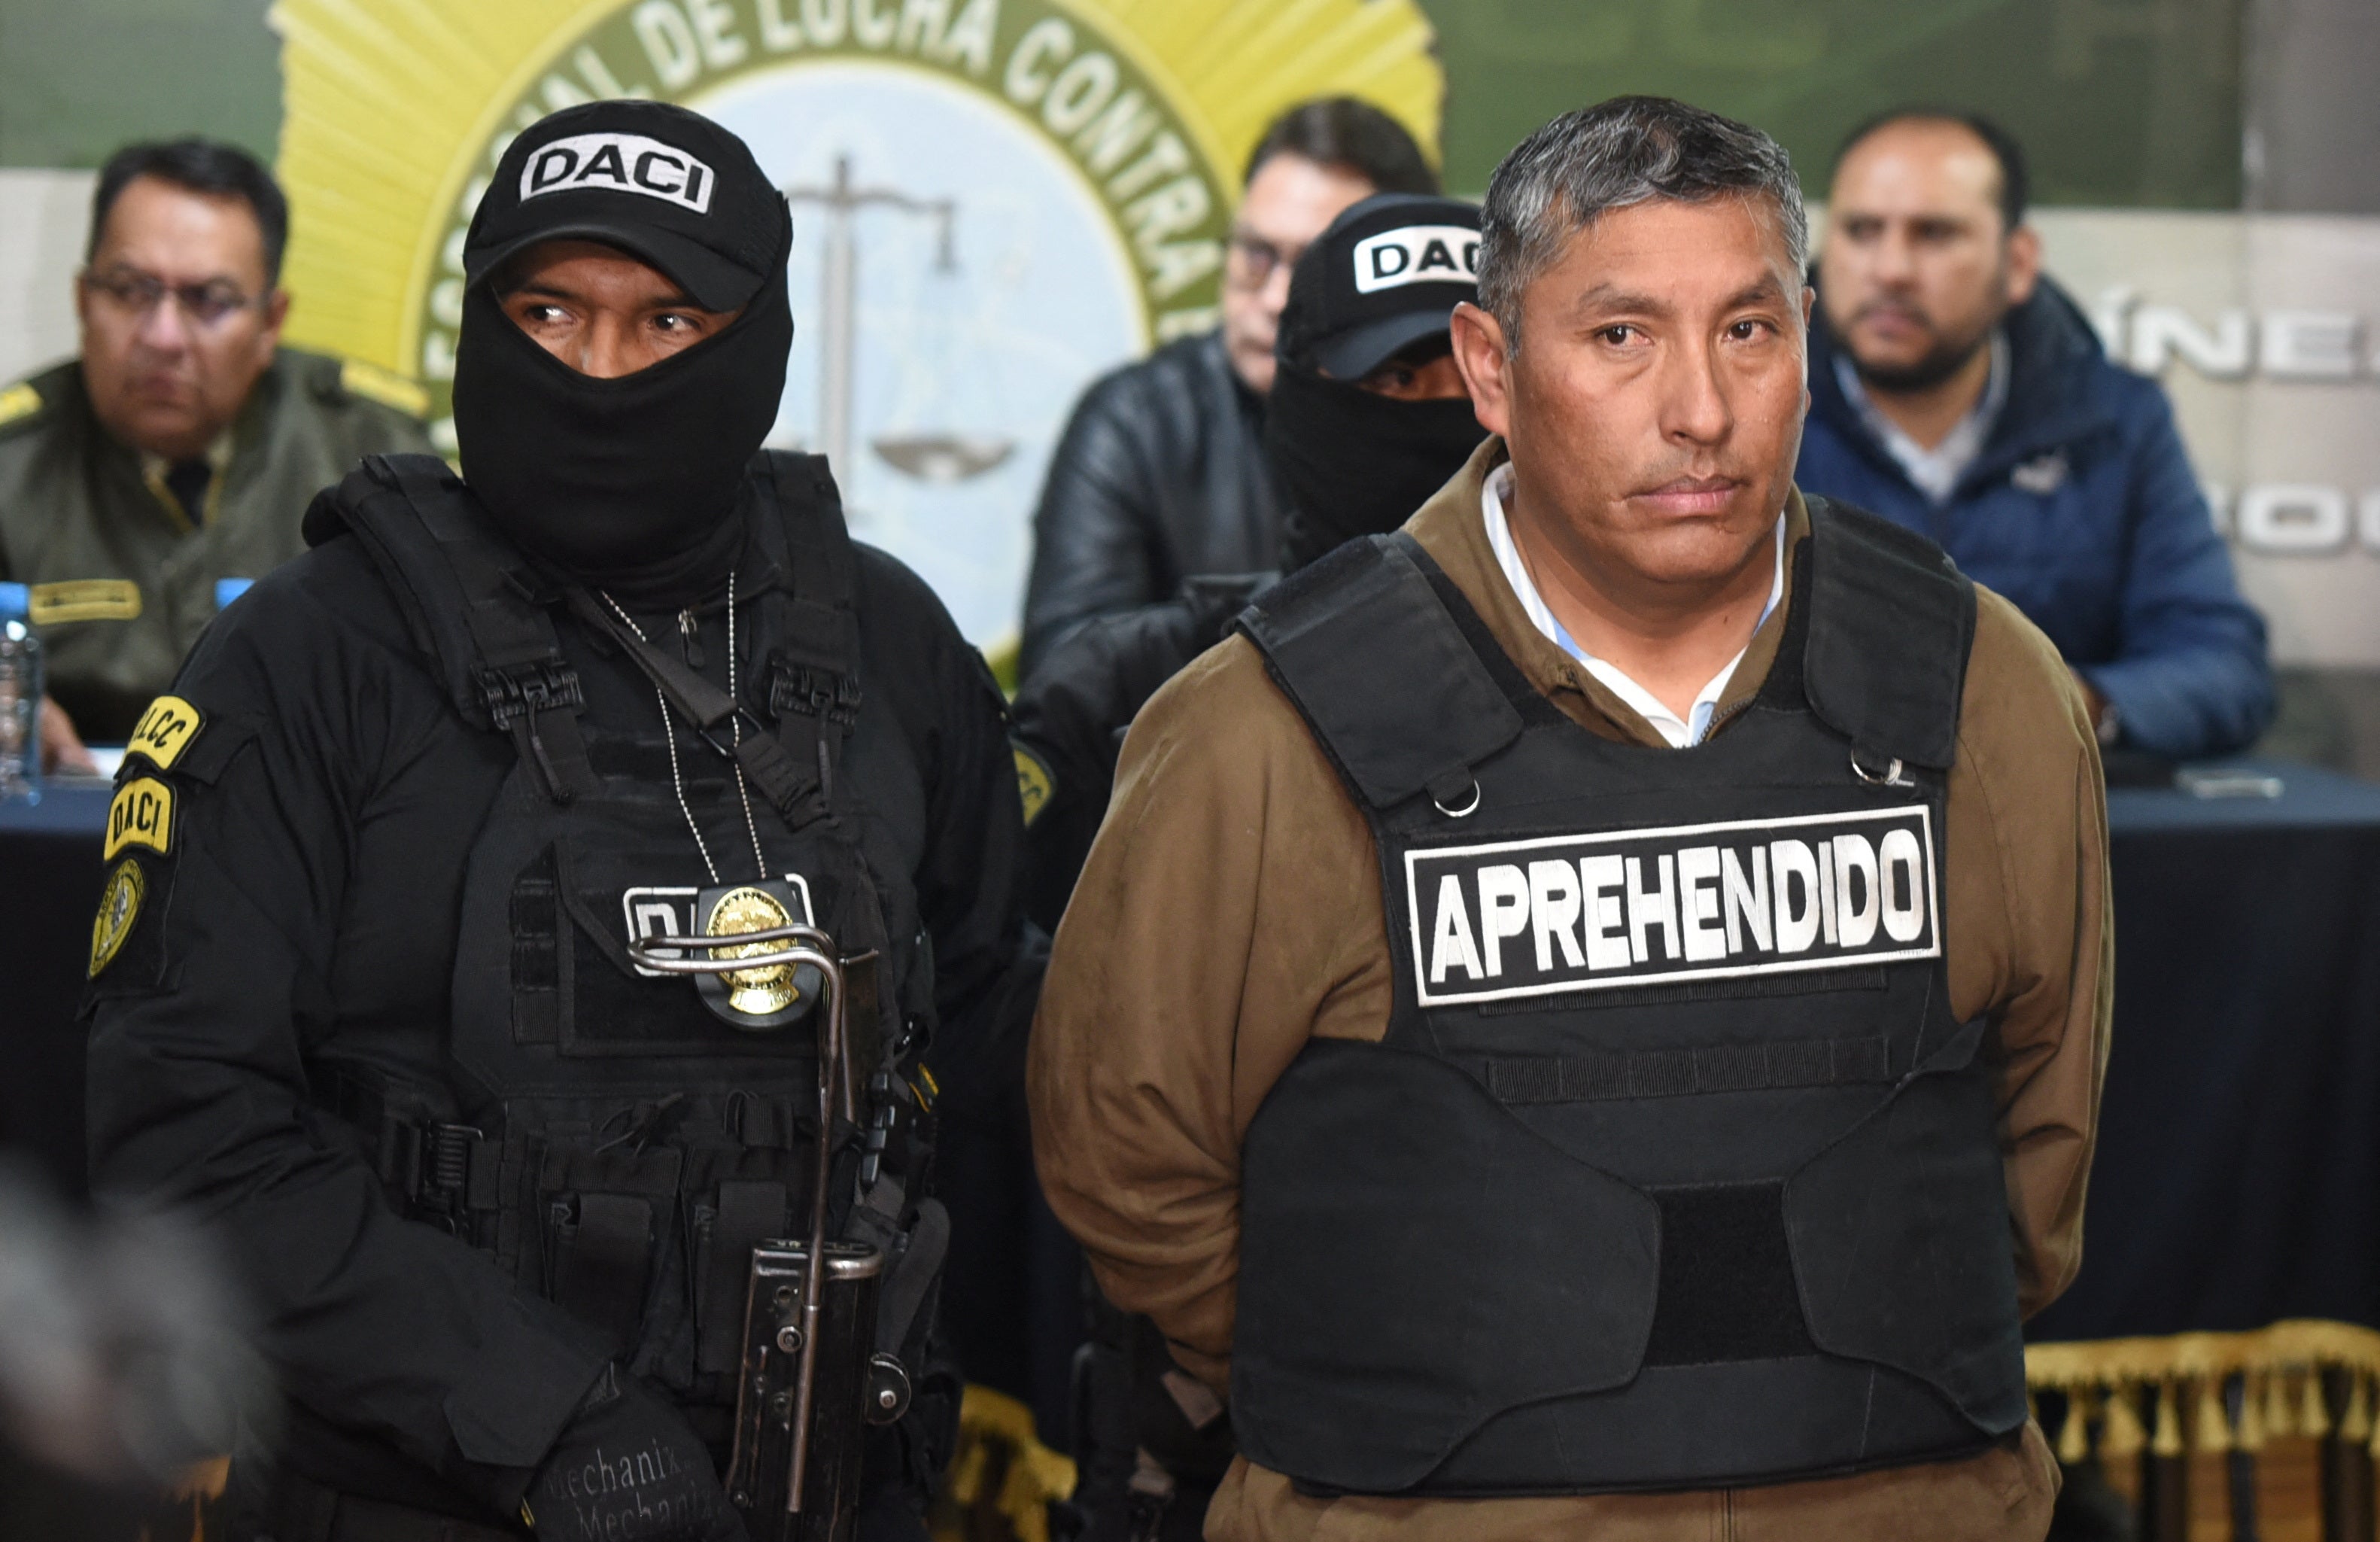 De Boliviaanse vice-admiraal Juan Arnes Salvador paradeerde na zijn arrestatie door de autoriteiten op beschuldiging van poging tot staatsgreep in La Paz